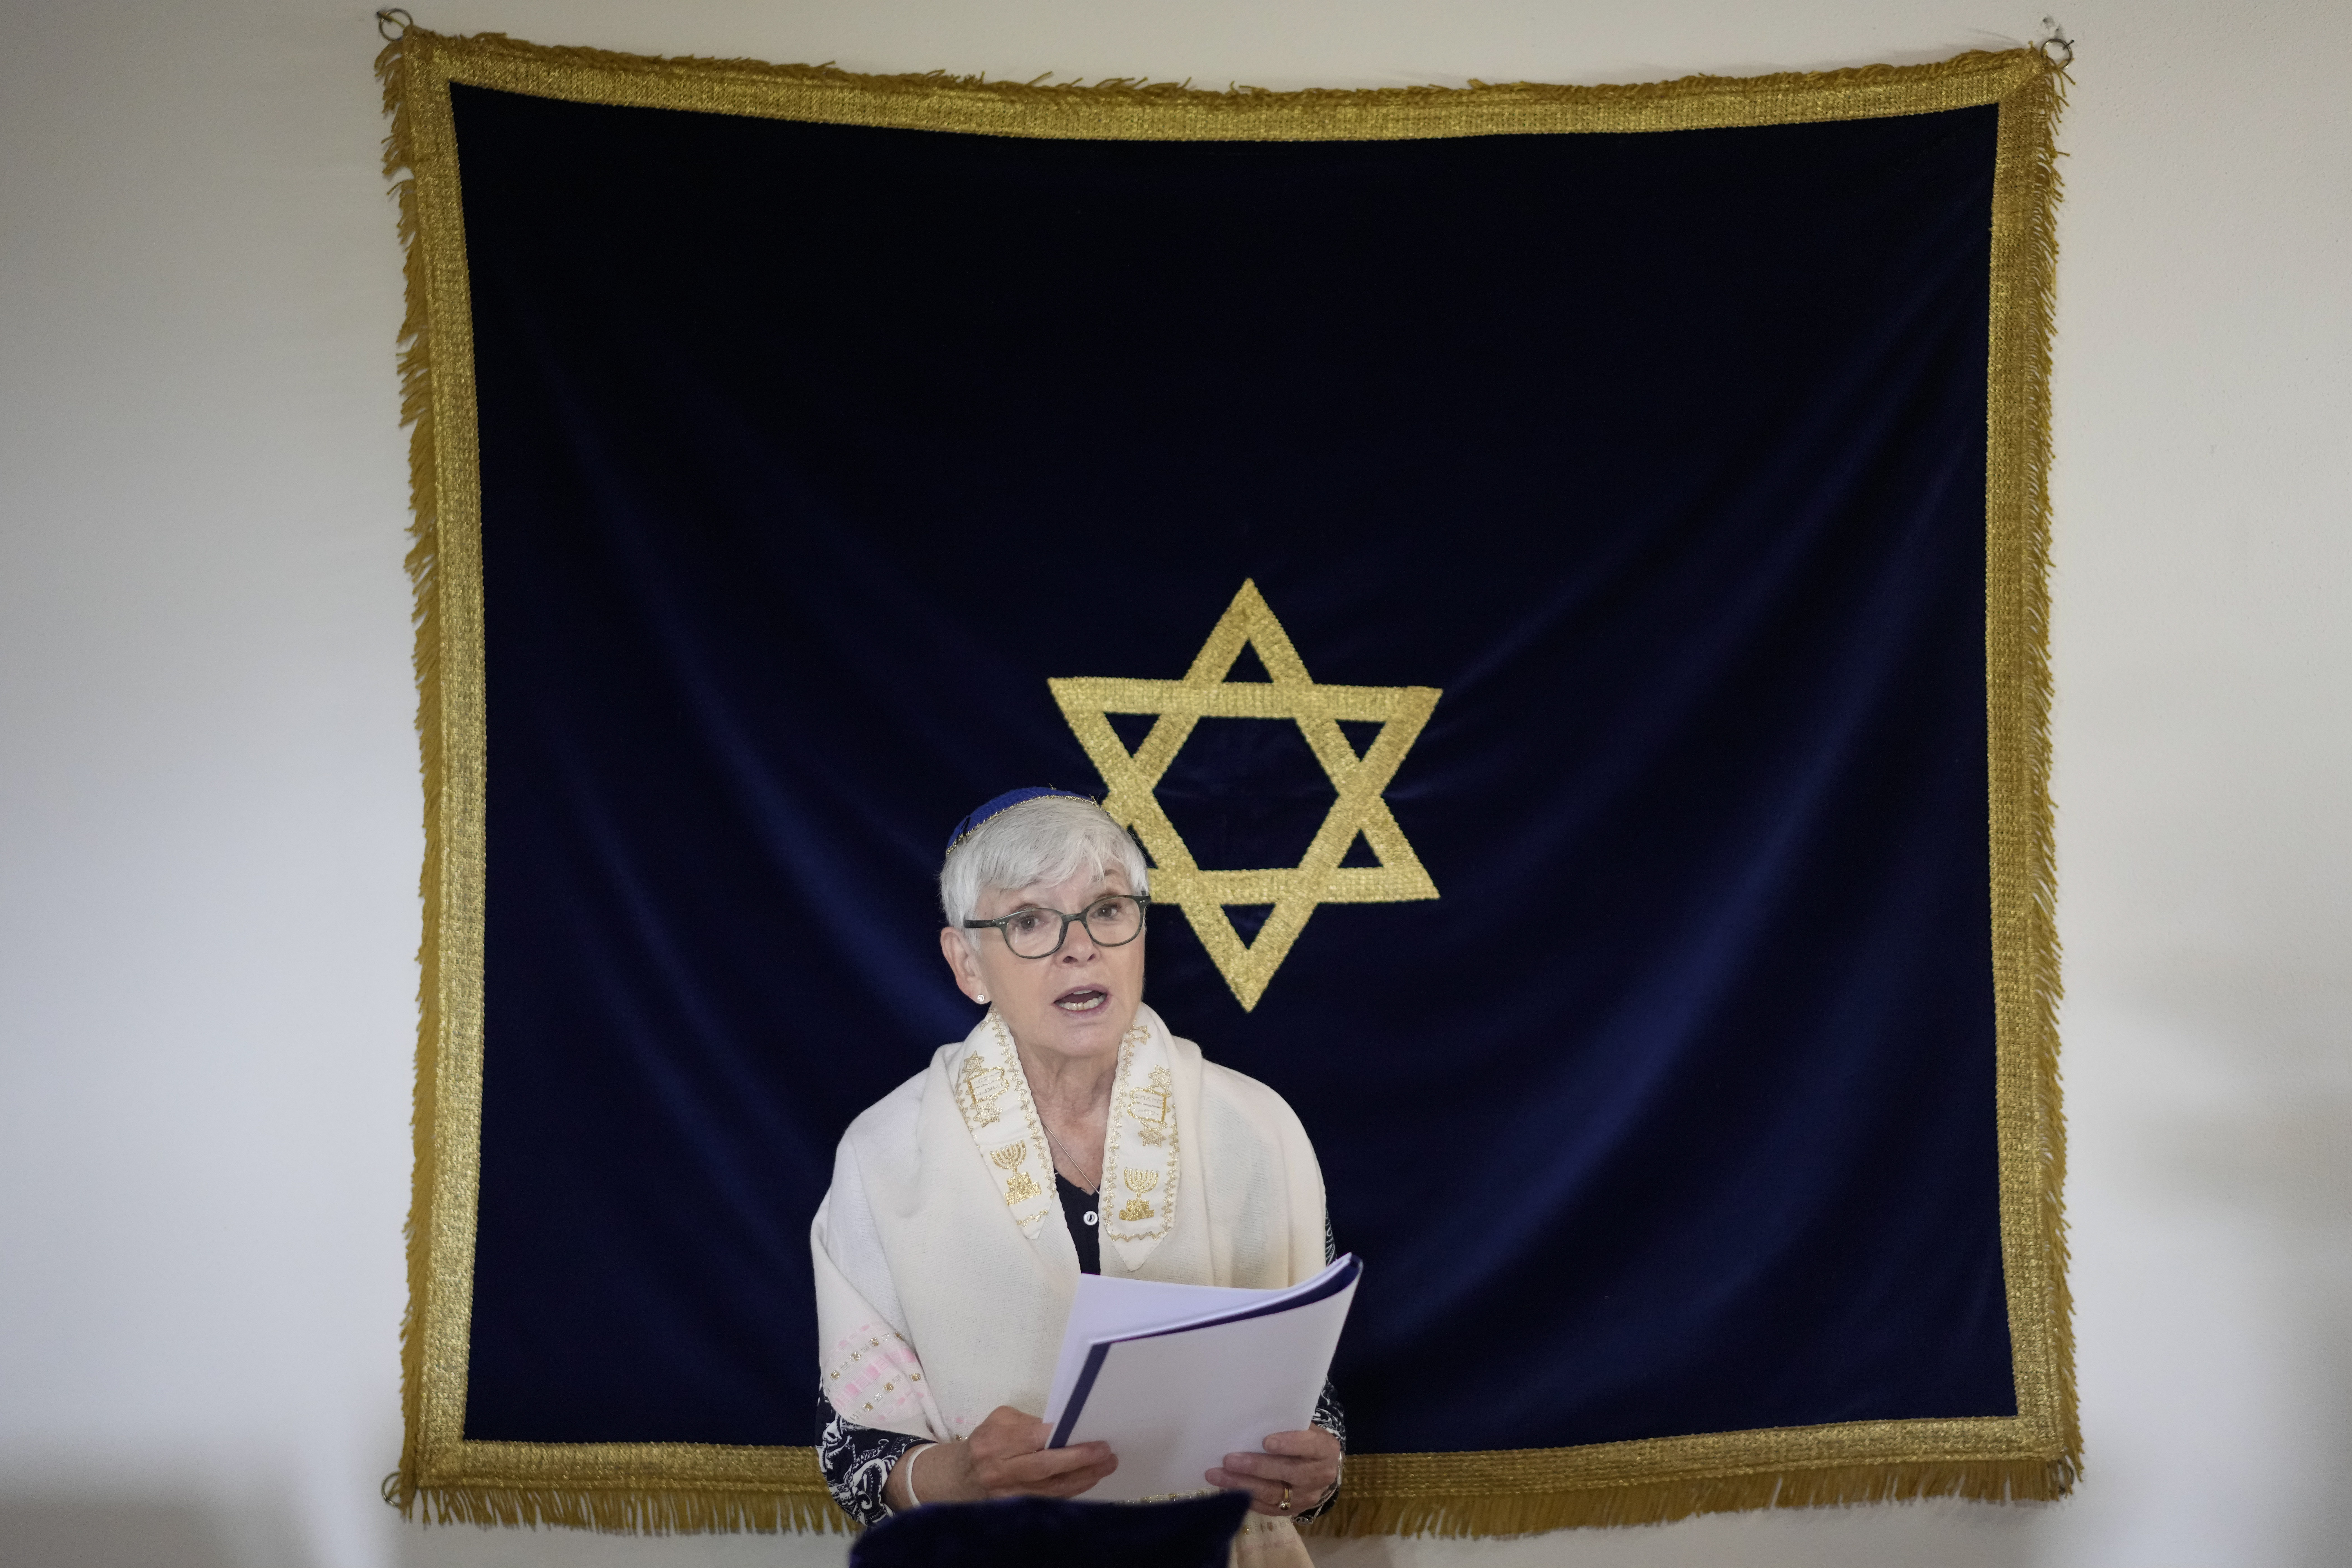 Rabbi Barbara Aiello reads prayers in her 